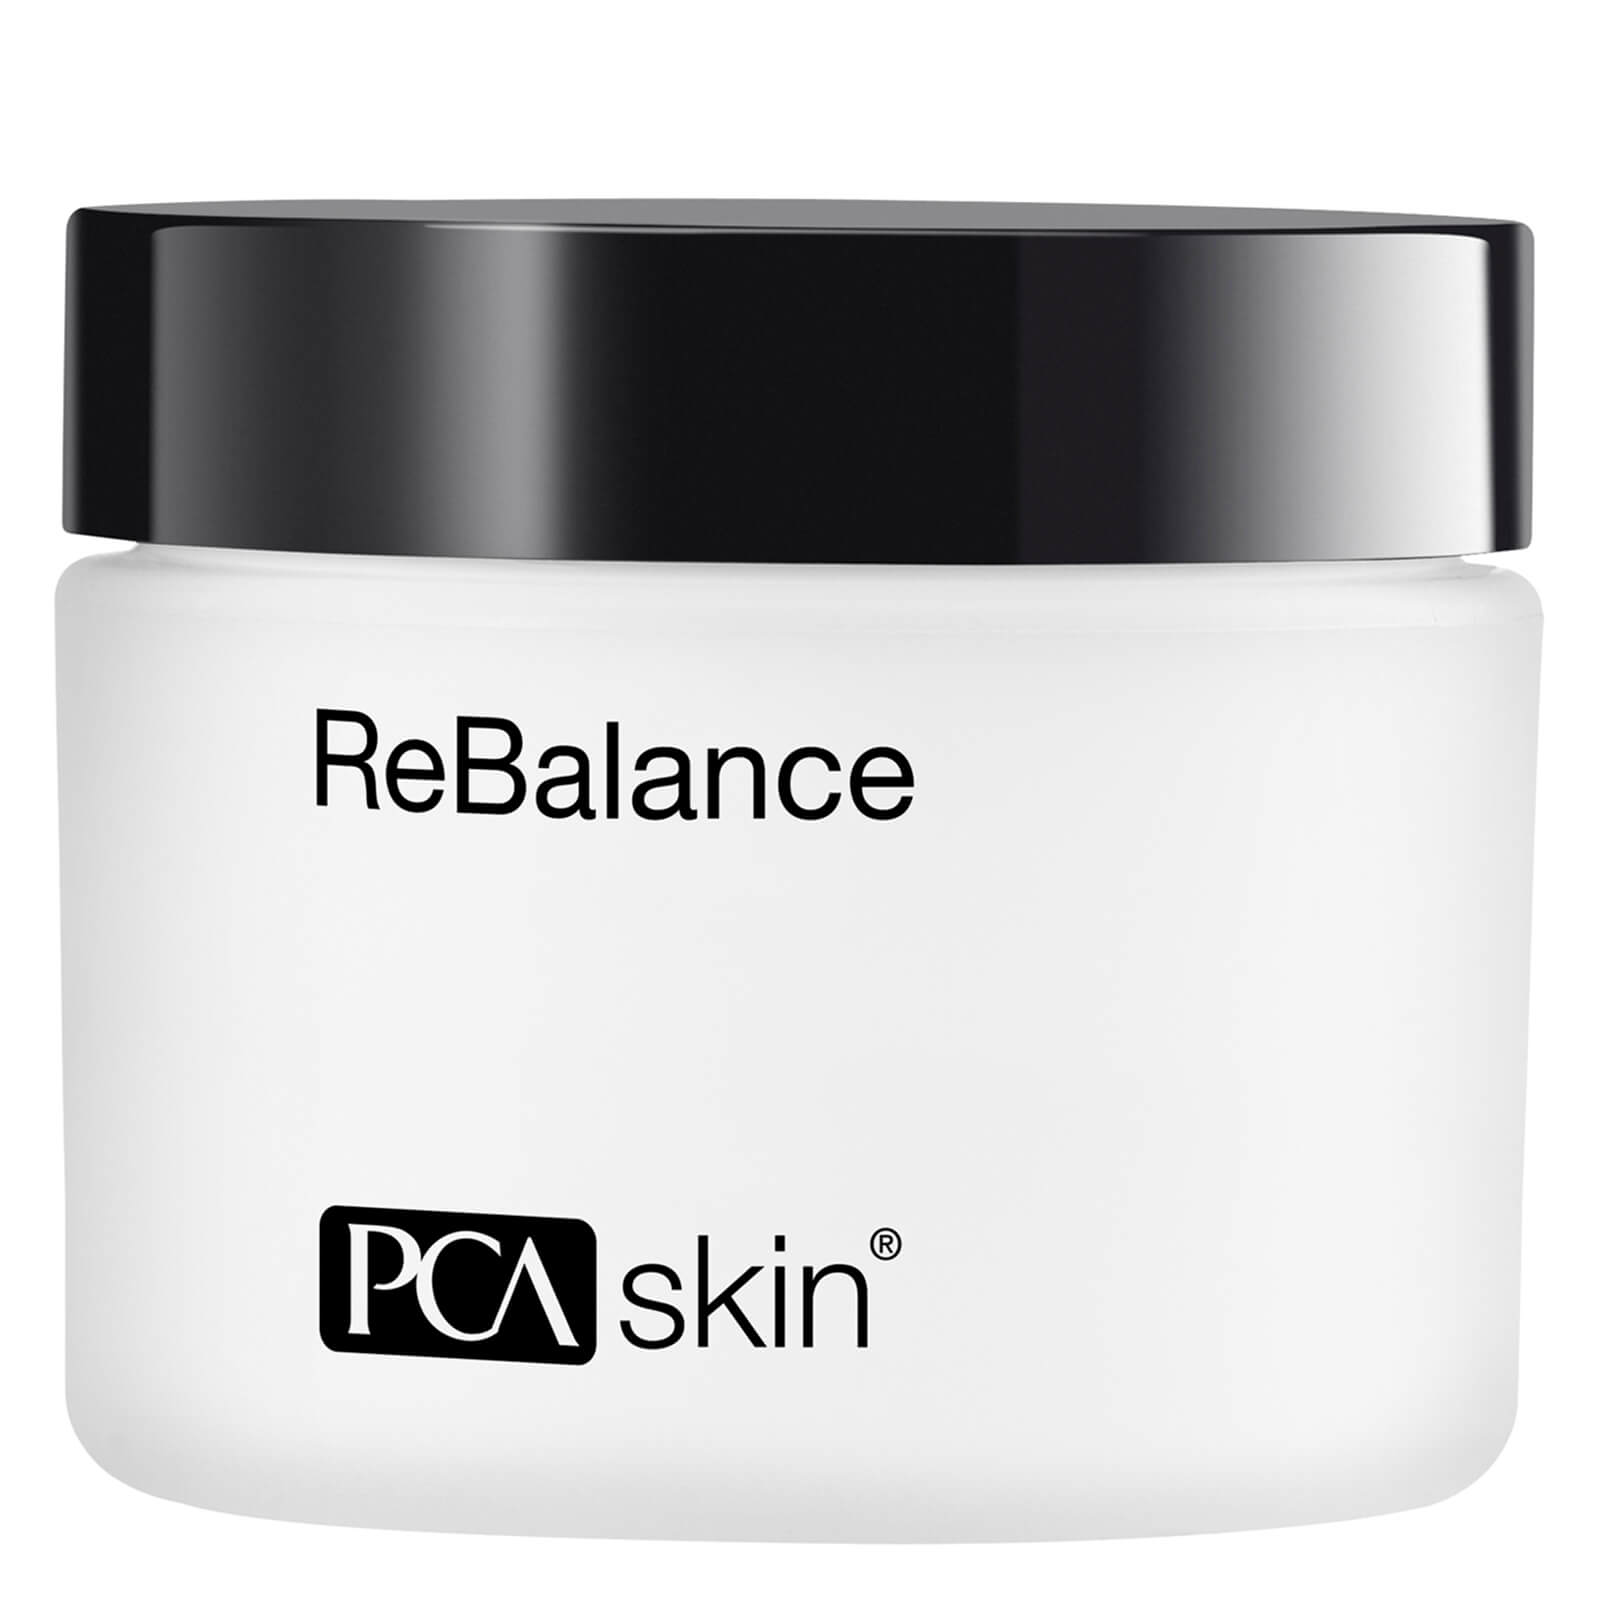 PCA SKIN ReBalance
					
					| SkinCareRX